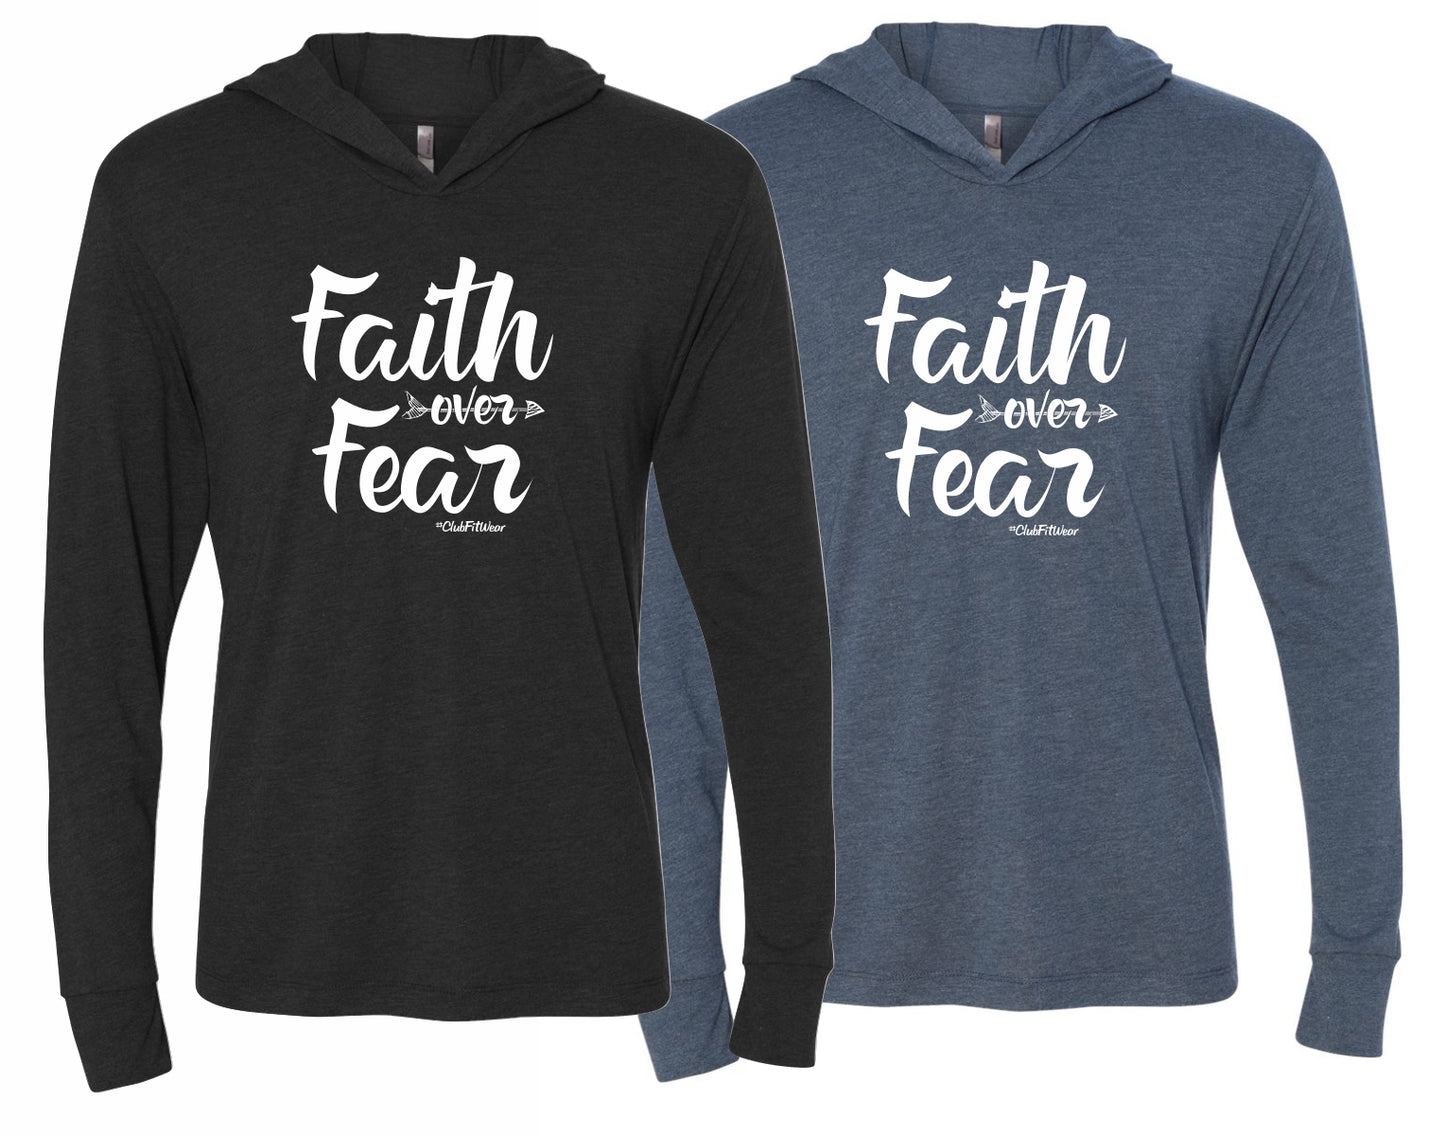 Faith over Fear - Unisex Hooded Tee